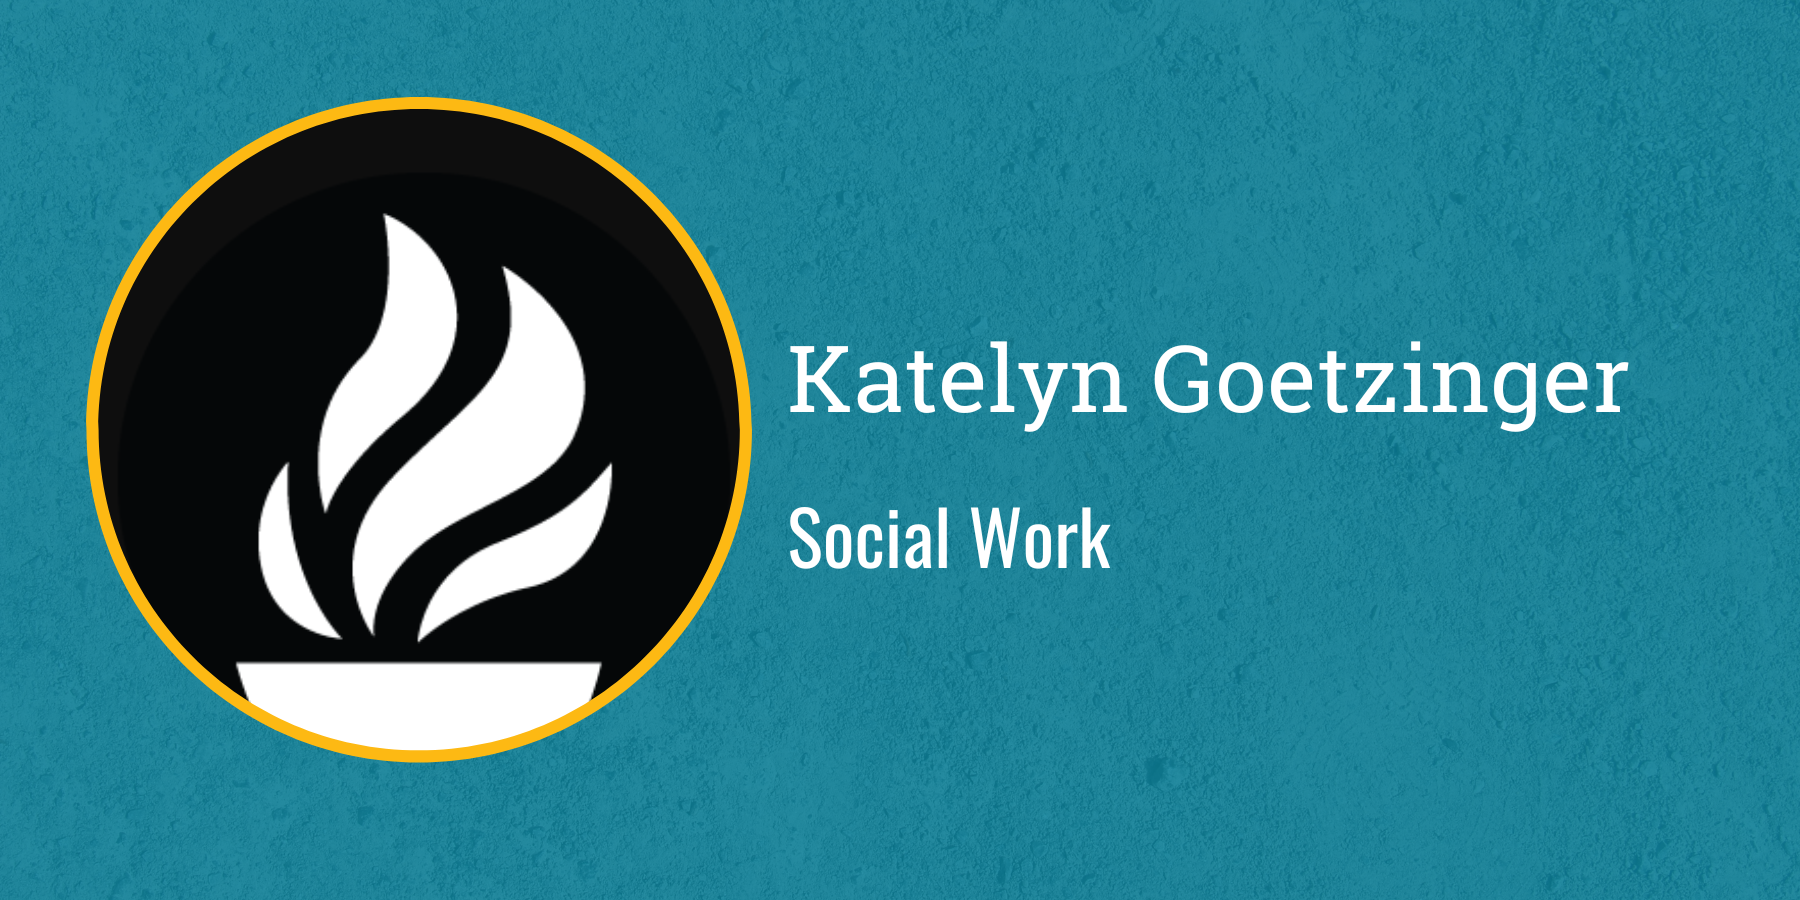 Katelyn Goetzinger
Social Work 